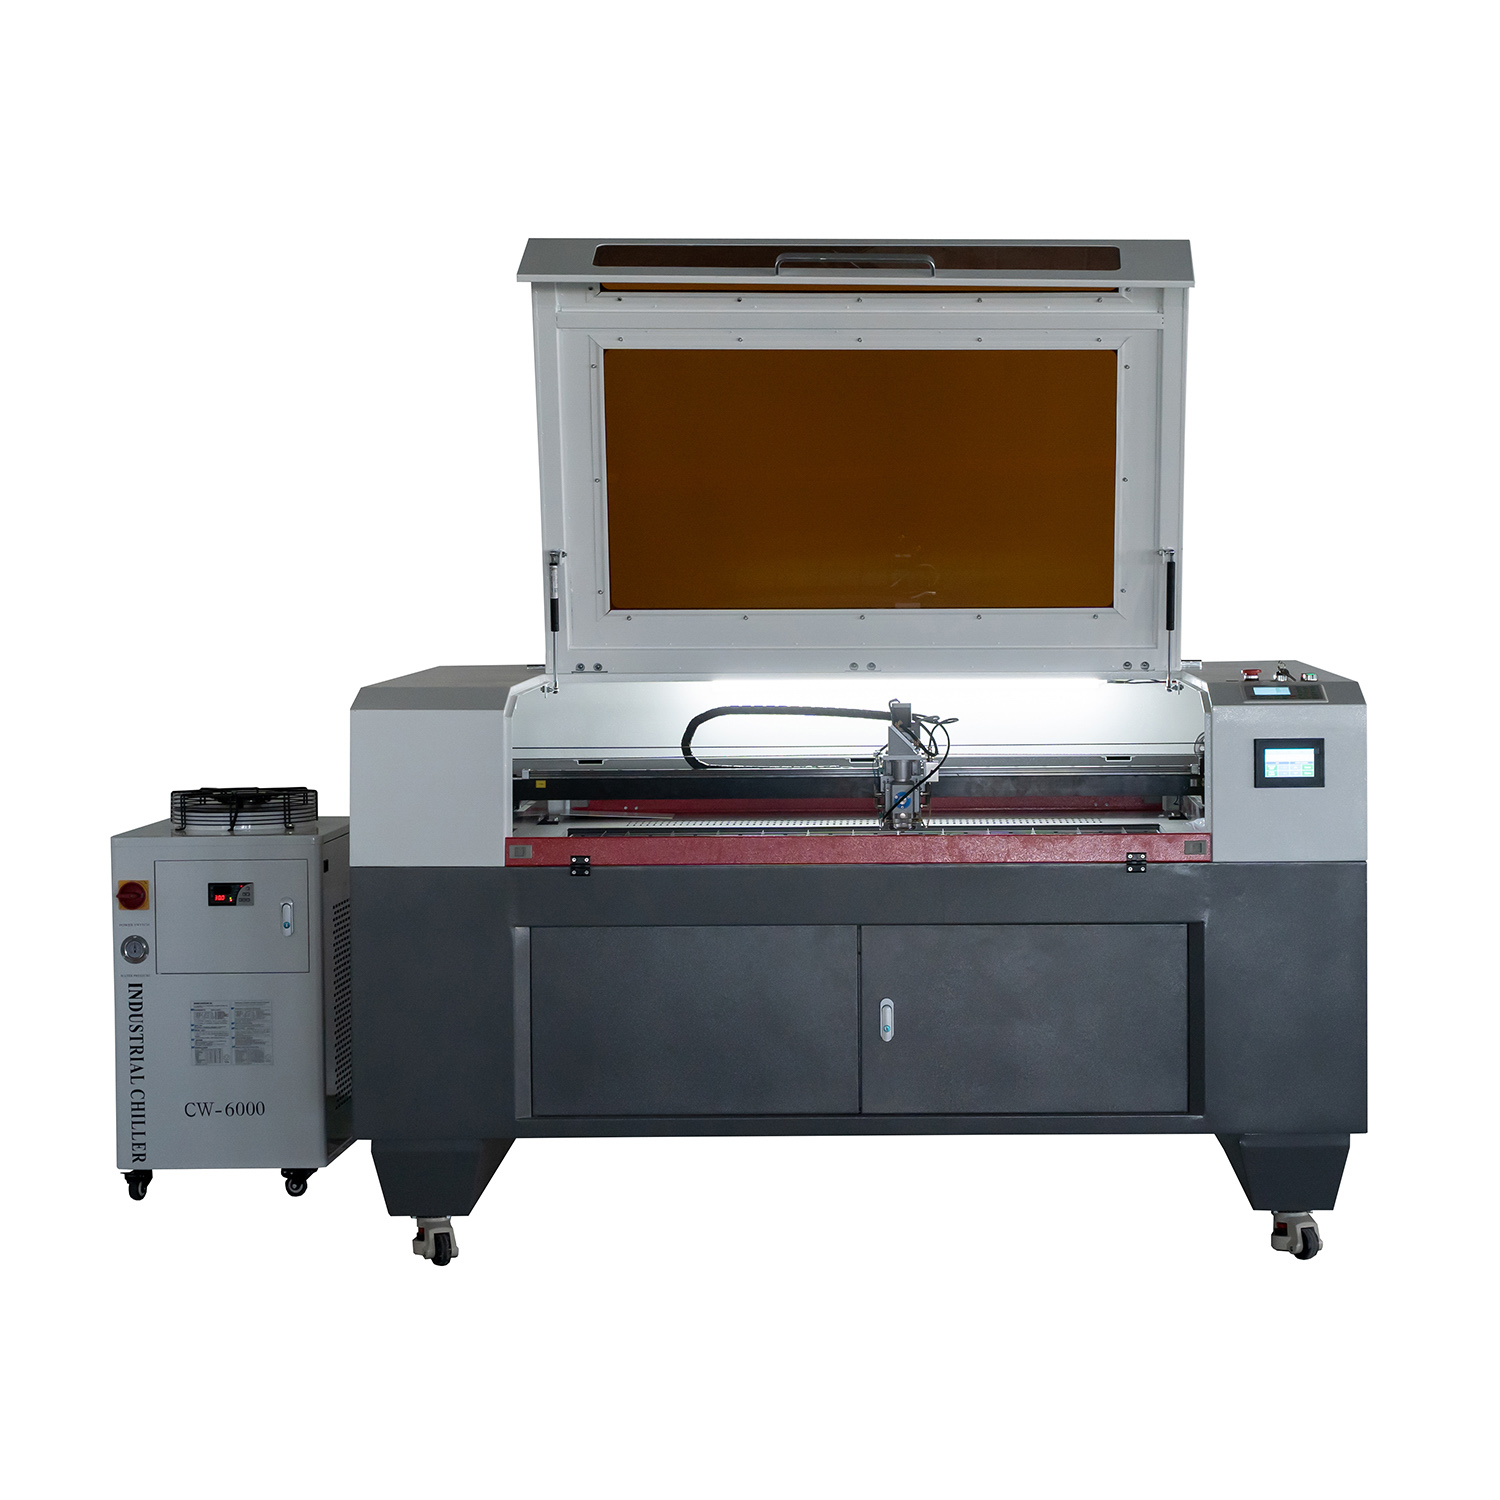 51.18"Кс35.43" 1390 ЦО2 мешовита машина за ласерско сечење са индустријским хладњаком